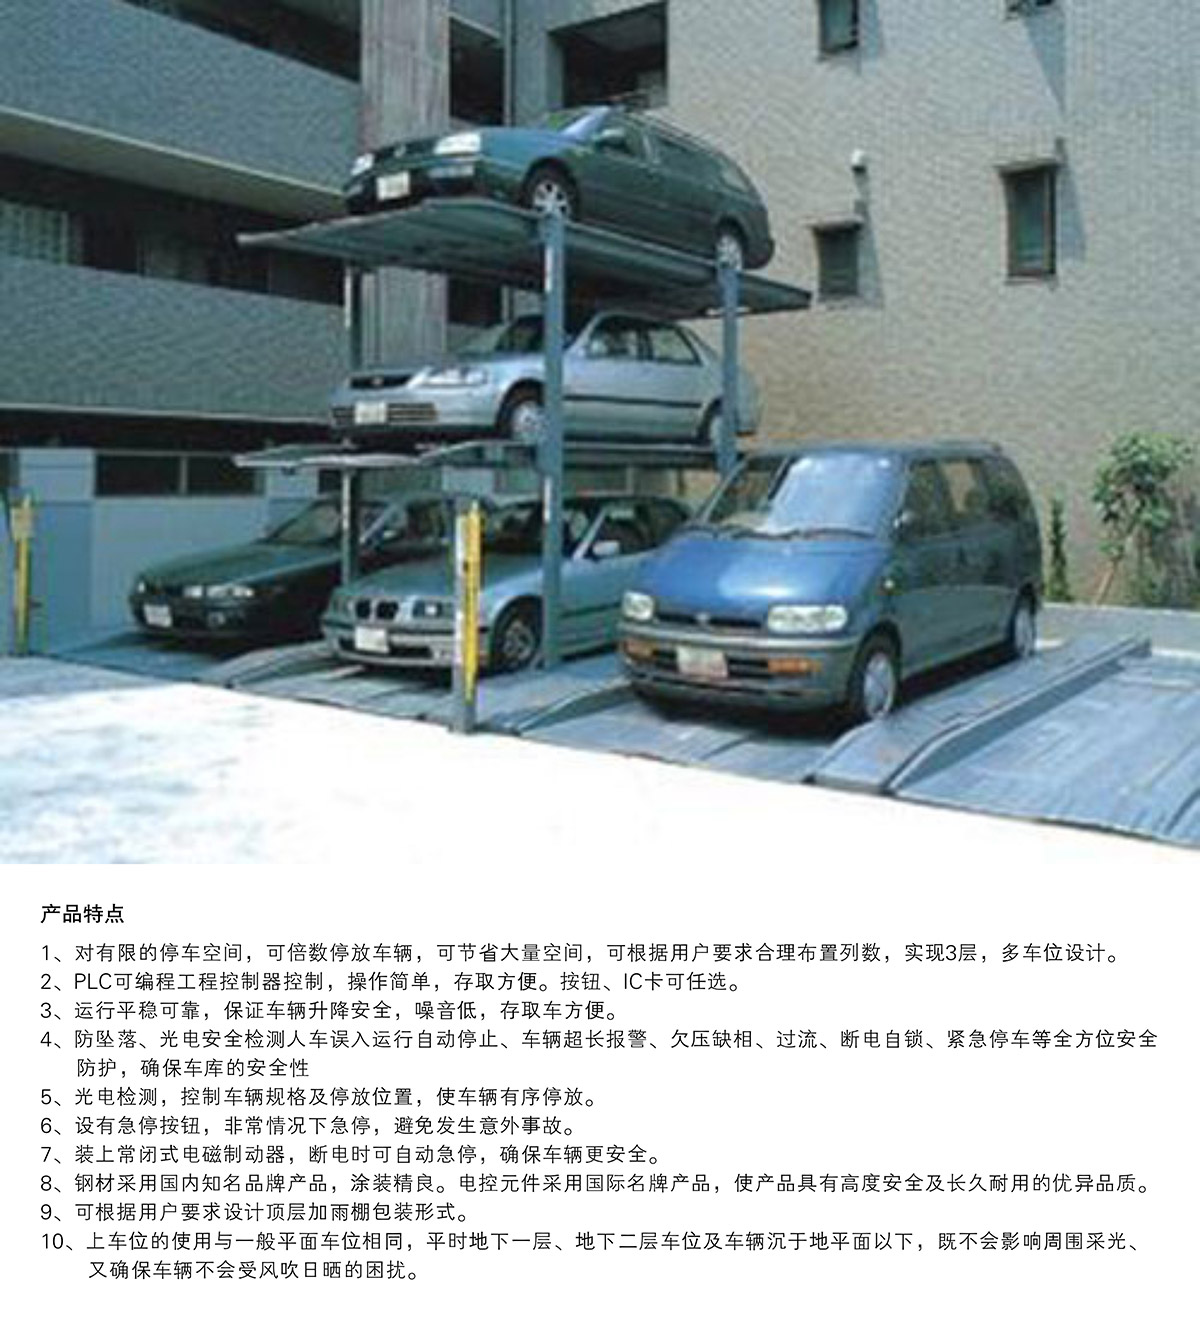 贵阳PJS3D2三层地坑简易升降停车设备产品特点.jpg